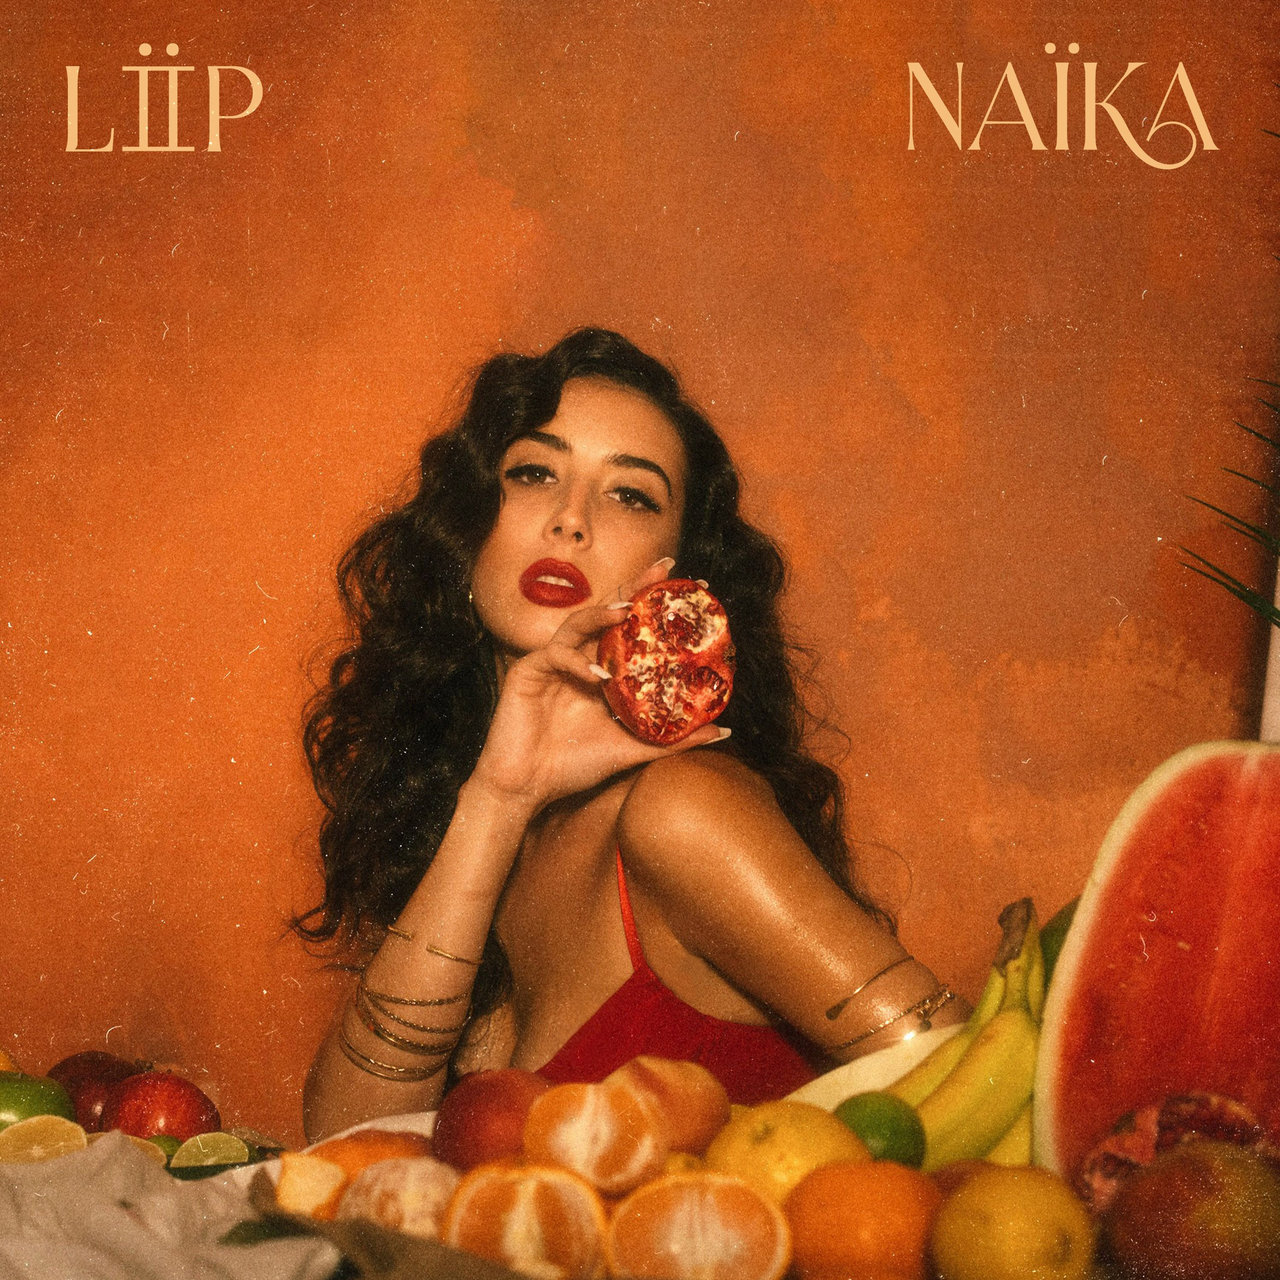 Naïka Lost in Paradise, Pt. 2 cover artwork